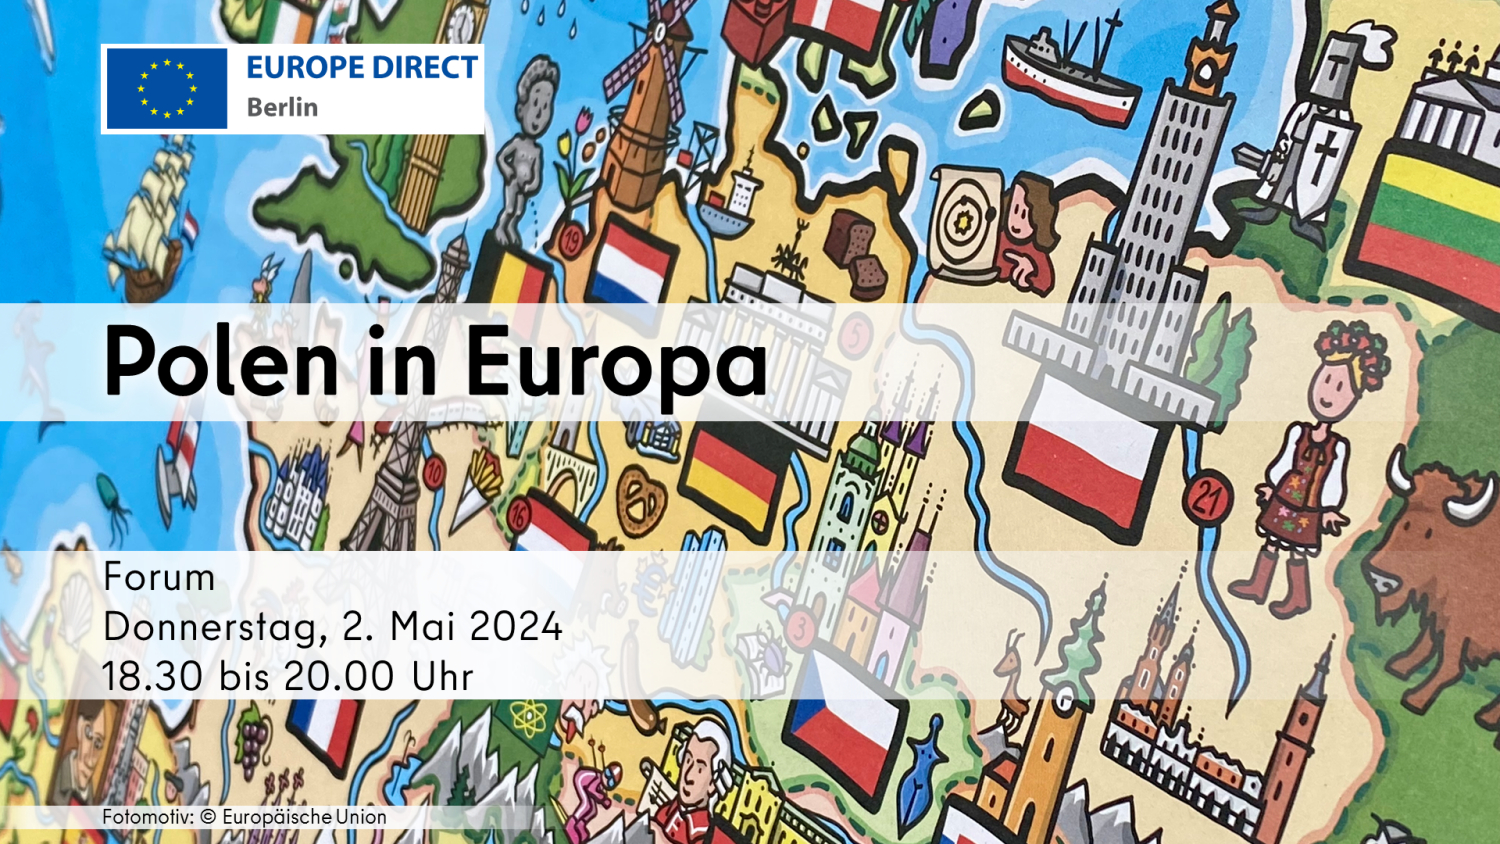 Veranstaltungstitel "Polen in Eurpa" mit Datum der Veranstaltung, 2.5.24, vor dem Hintergrund einer gezeichneten Europa-Karte im Comic-Stil